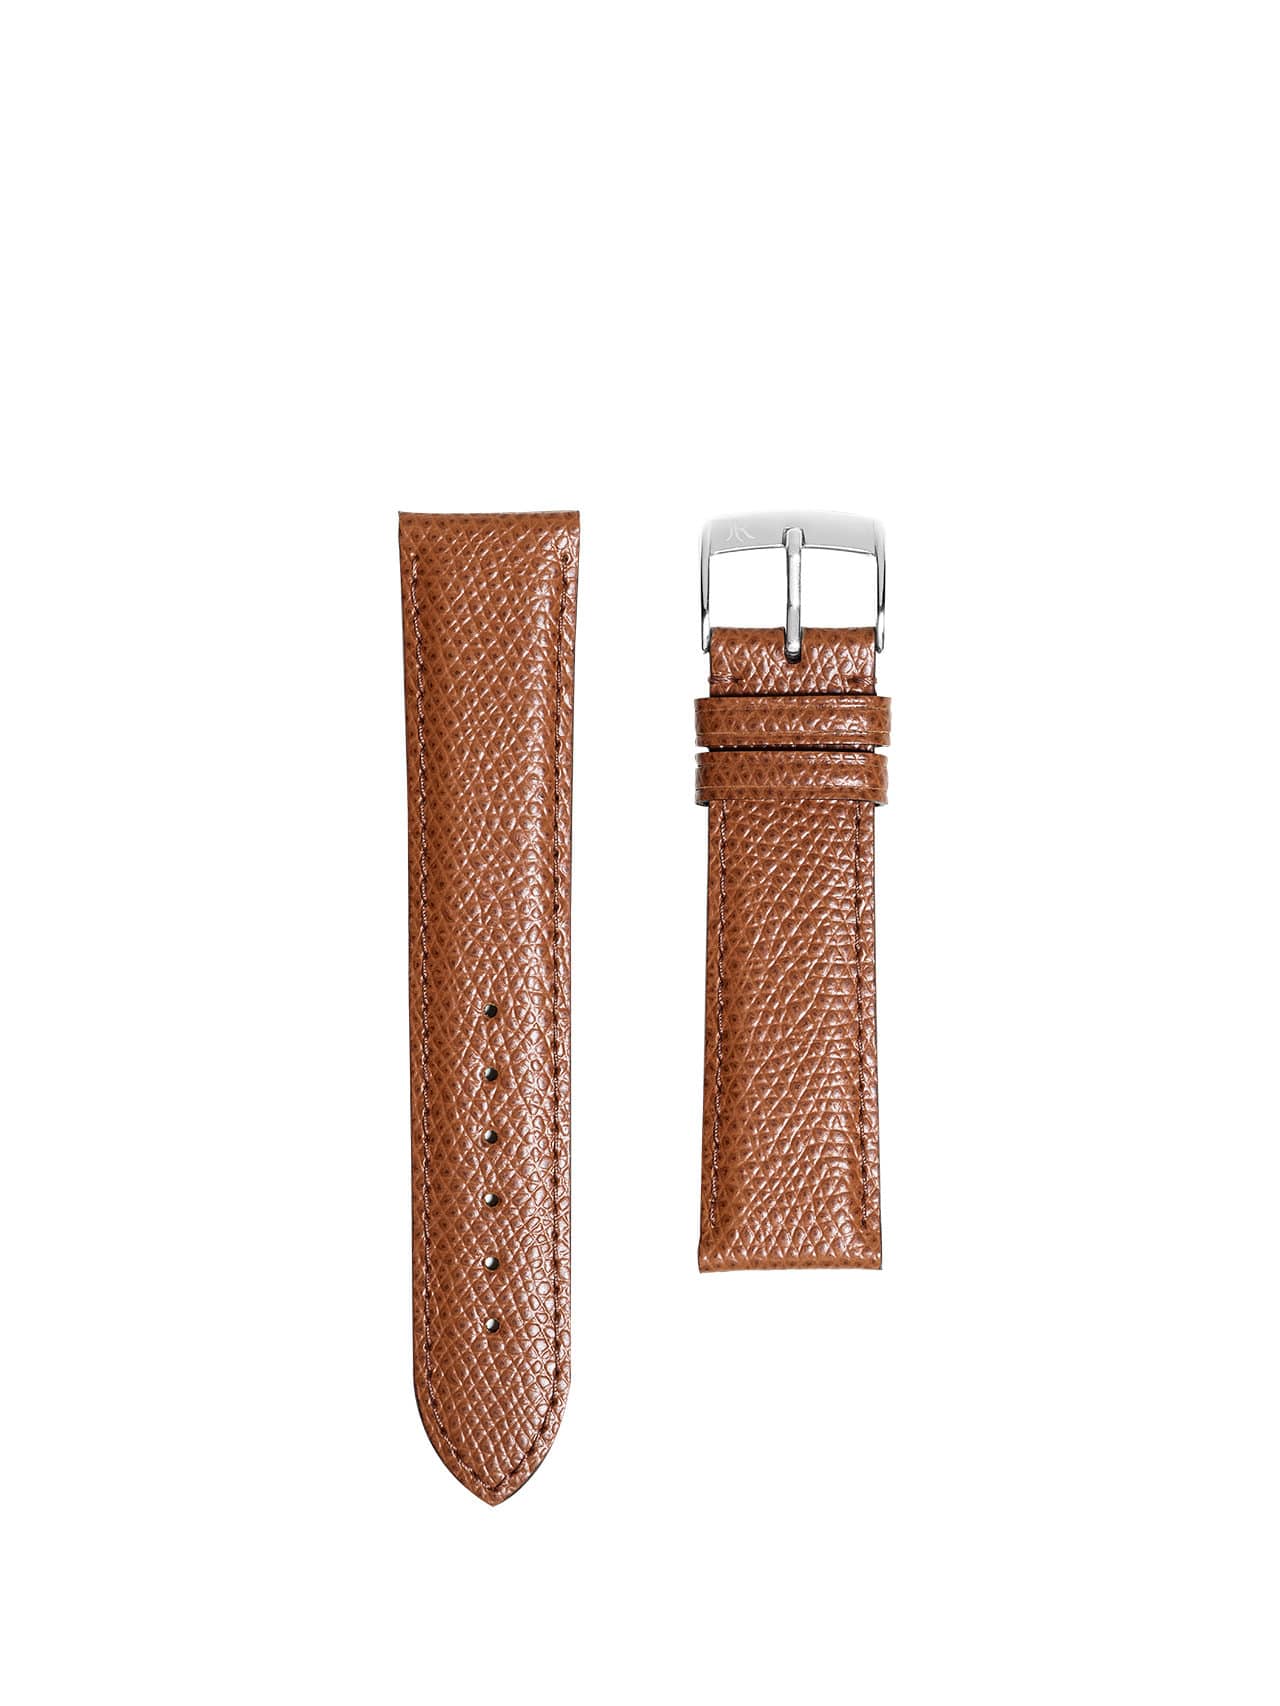 jean rousseau watch straps shagreen orange brown